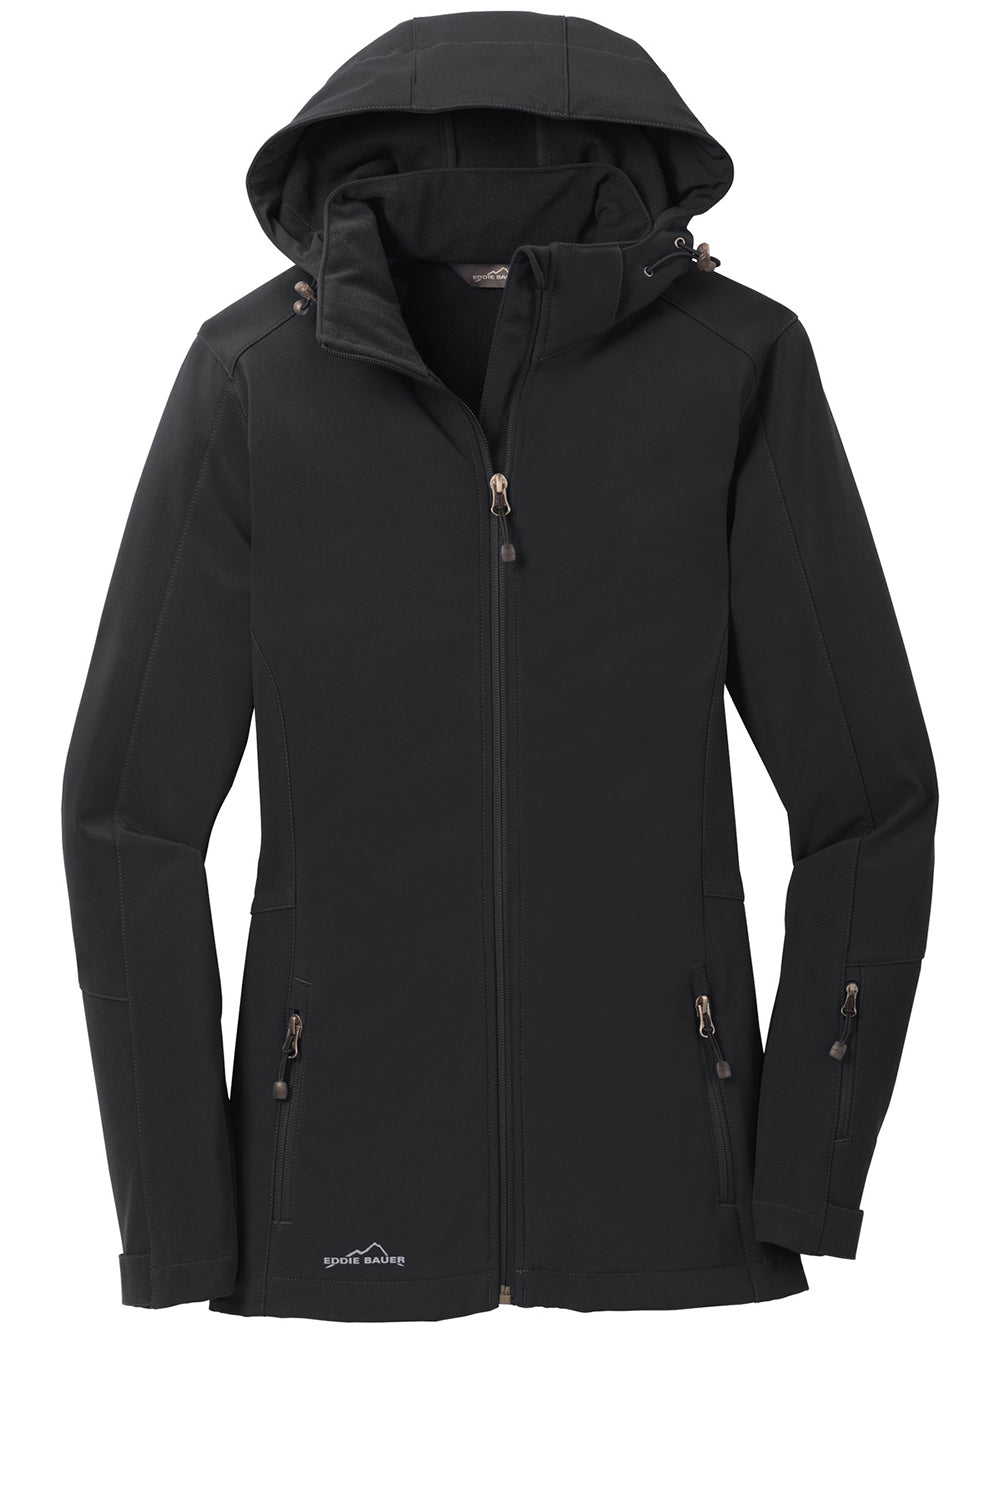 Eddie Bauer EB537 Womens Water Resistant Full Zip Hooded Jacket Black Flat Front